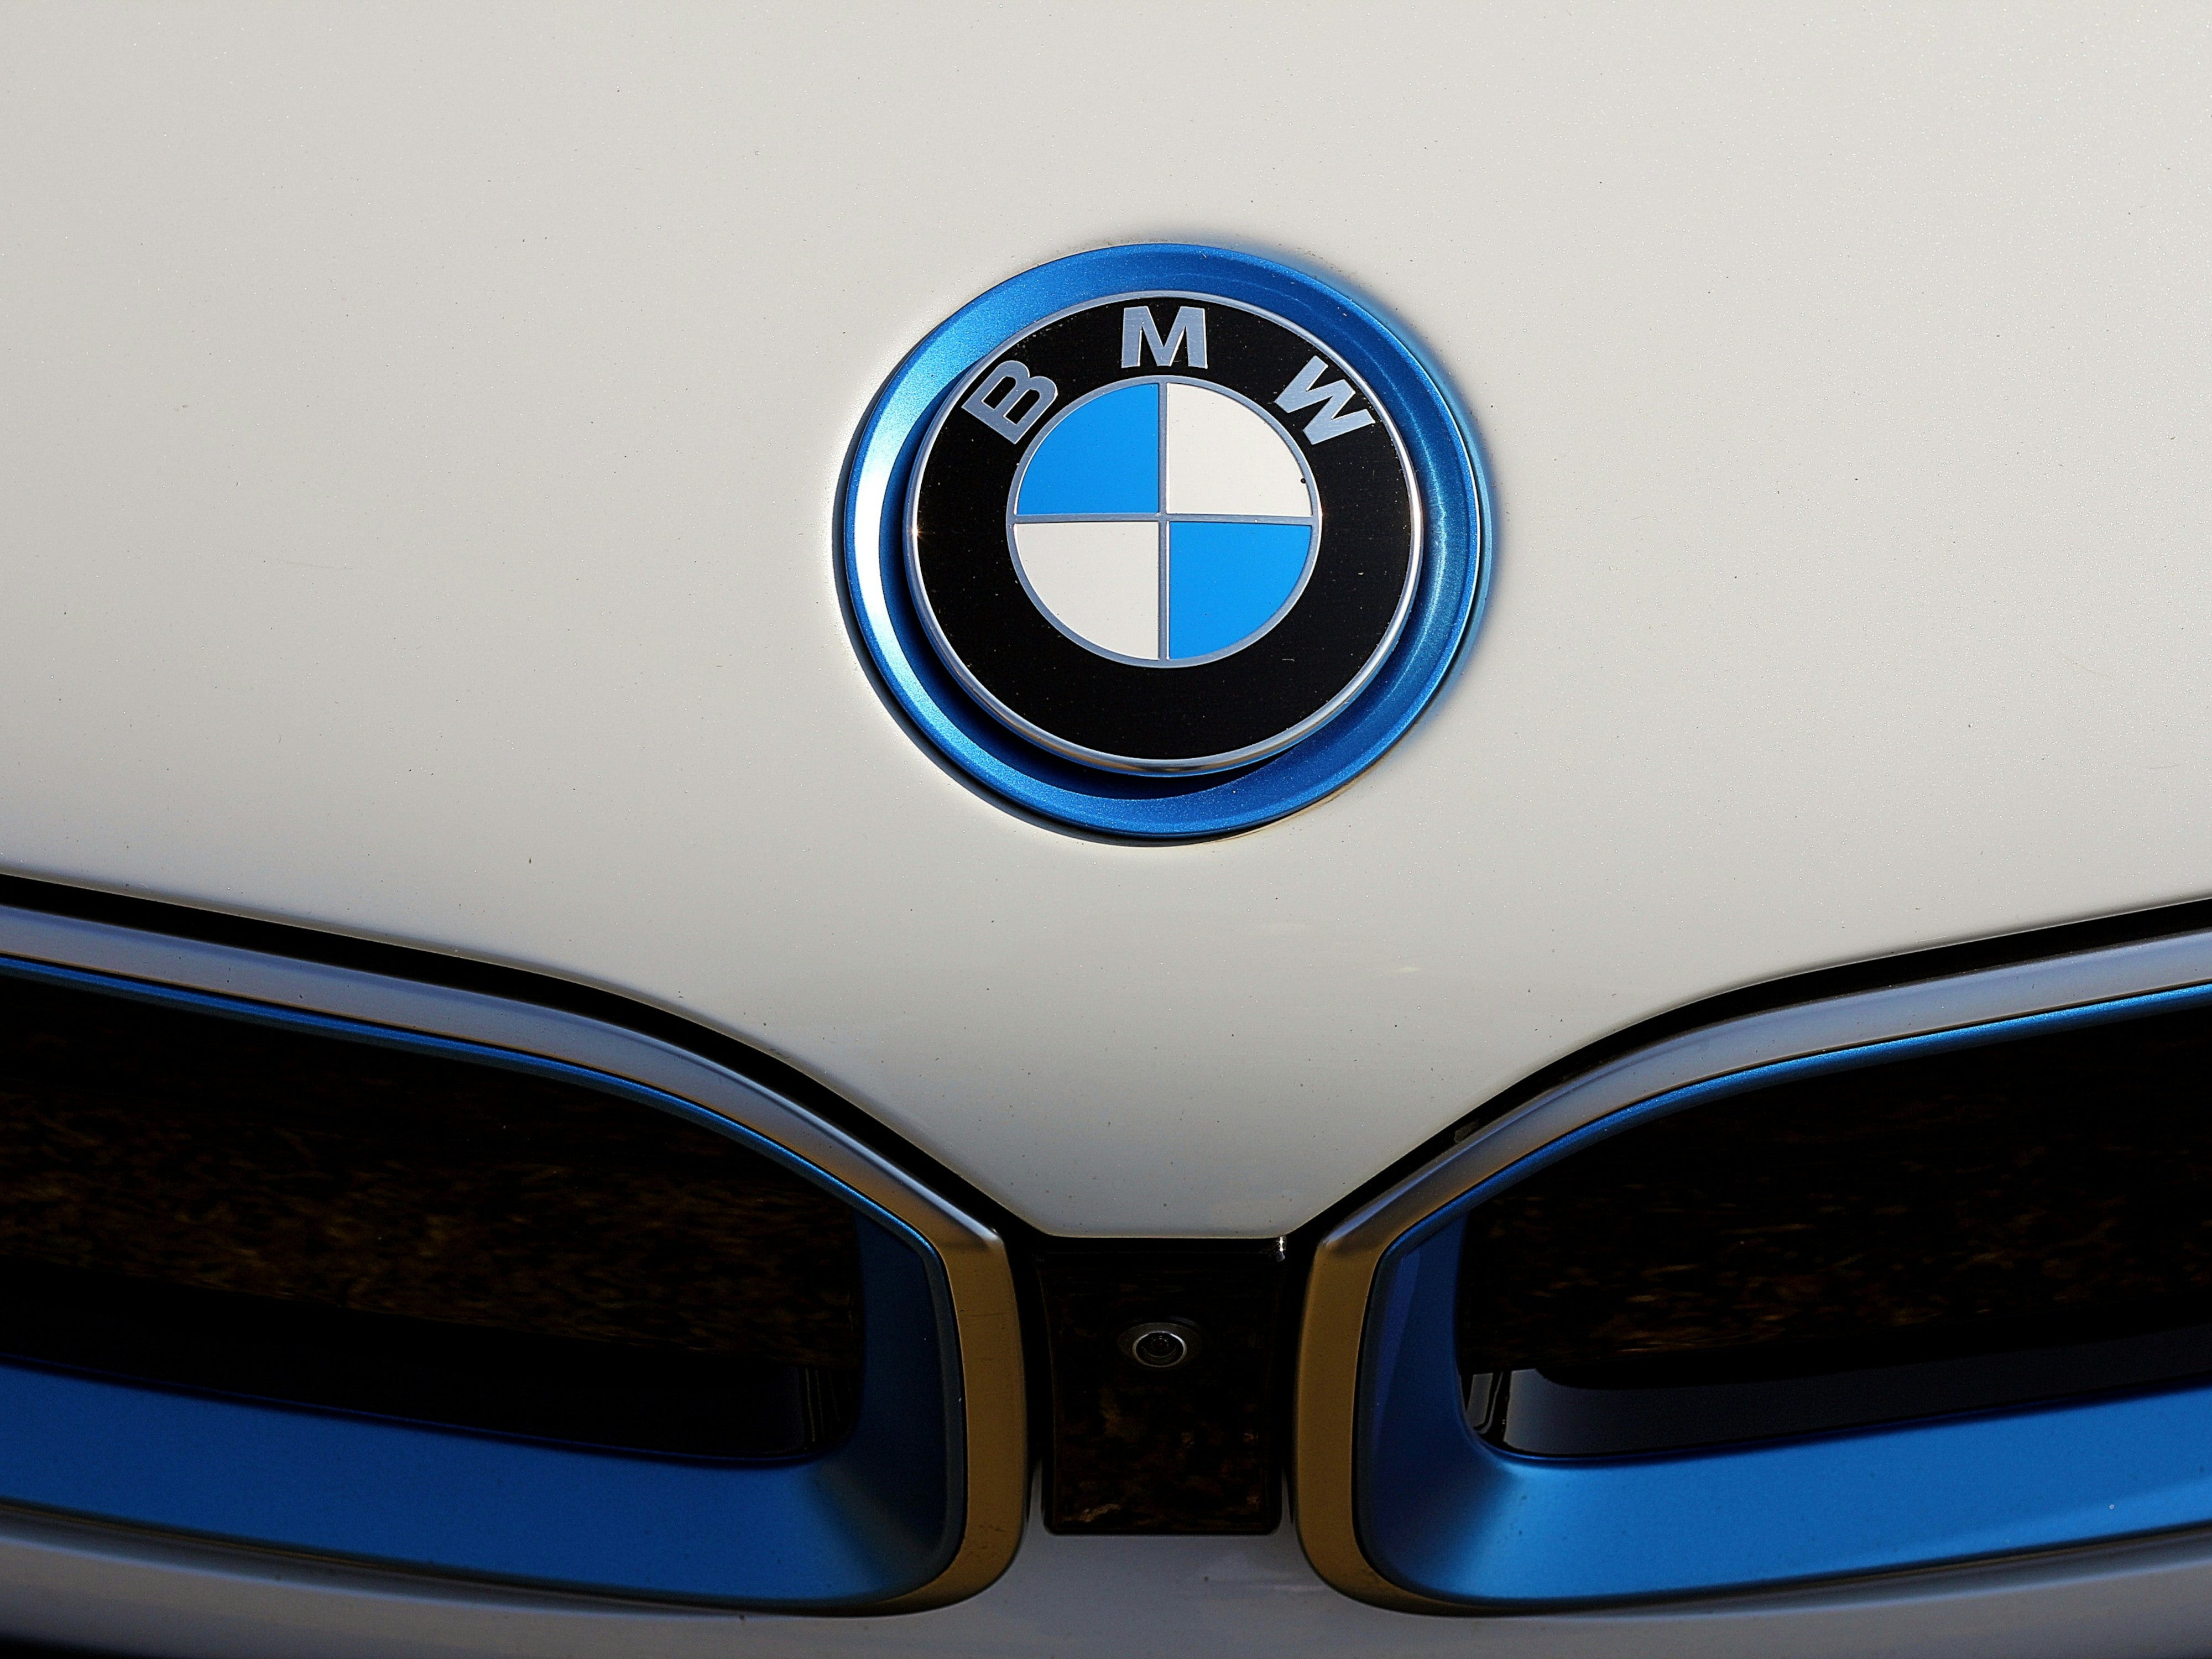 #E-Auto: BMW storniert Akku-Lieferung für 2 Milliarden Euro – was steckt dahinter?